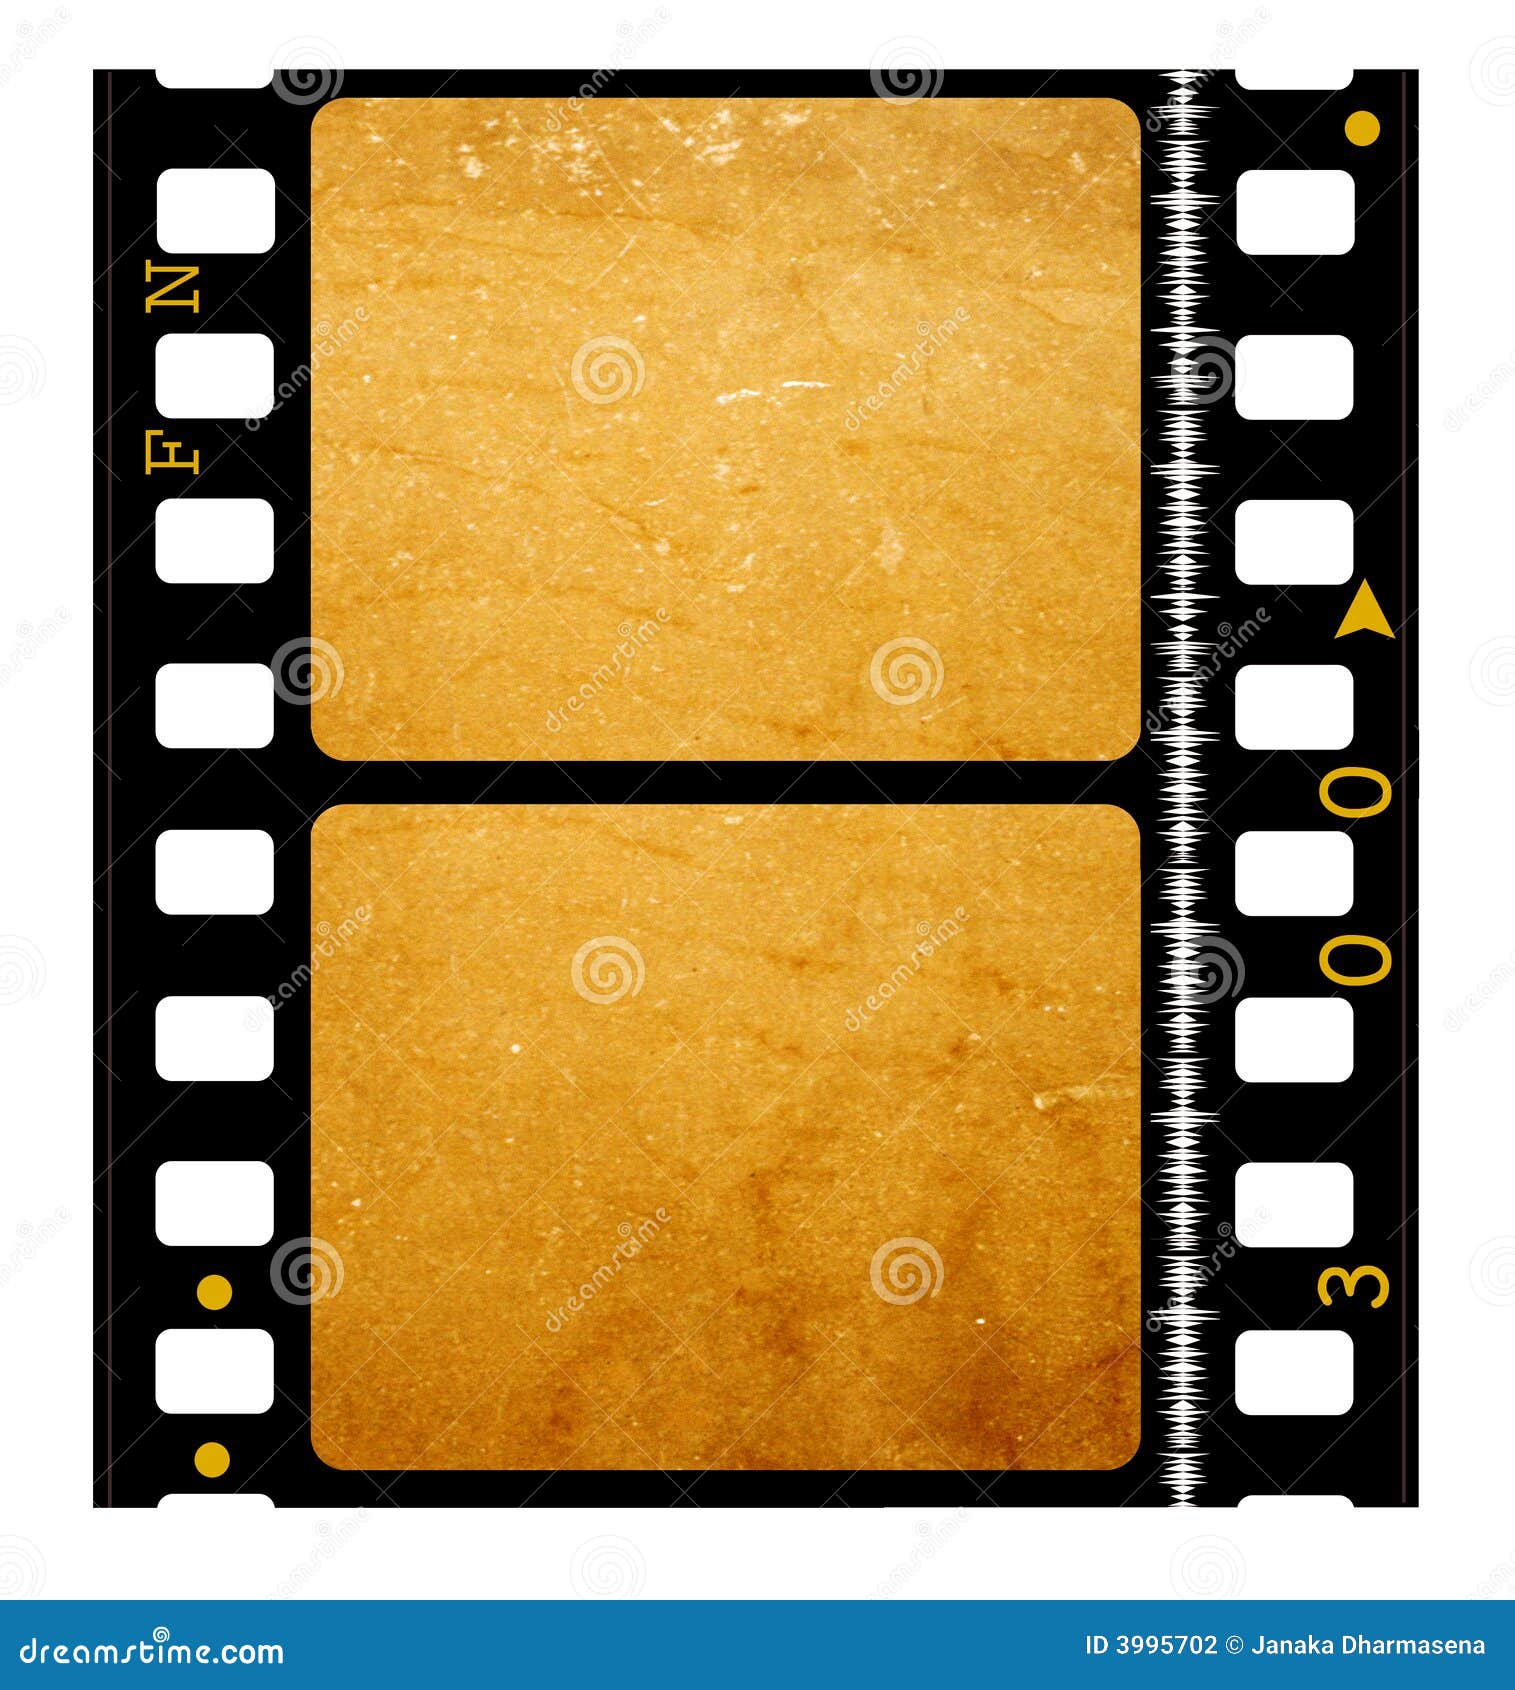 35 mm movie Film reel stock illustration. Illustration of digital - 3995702